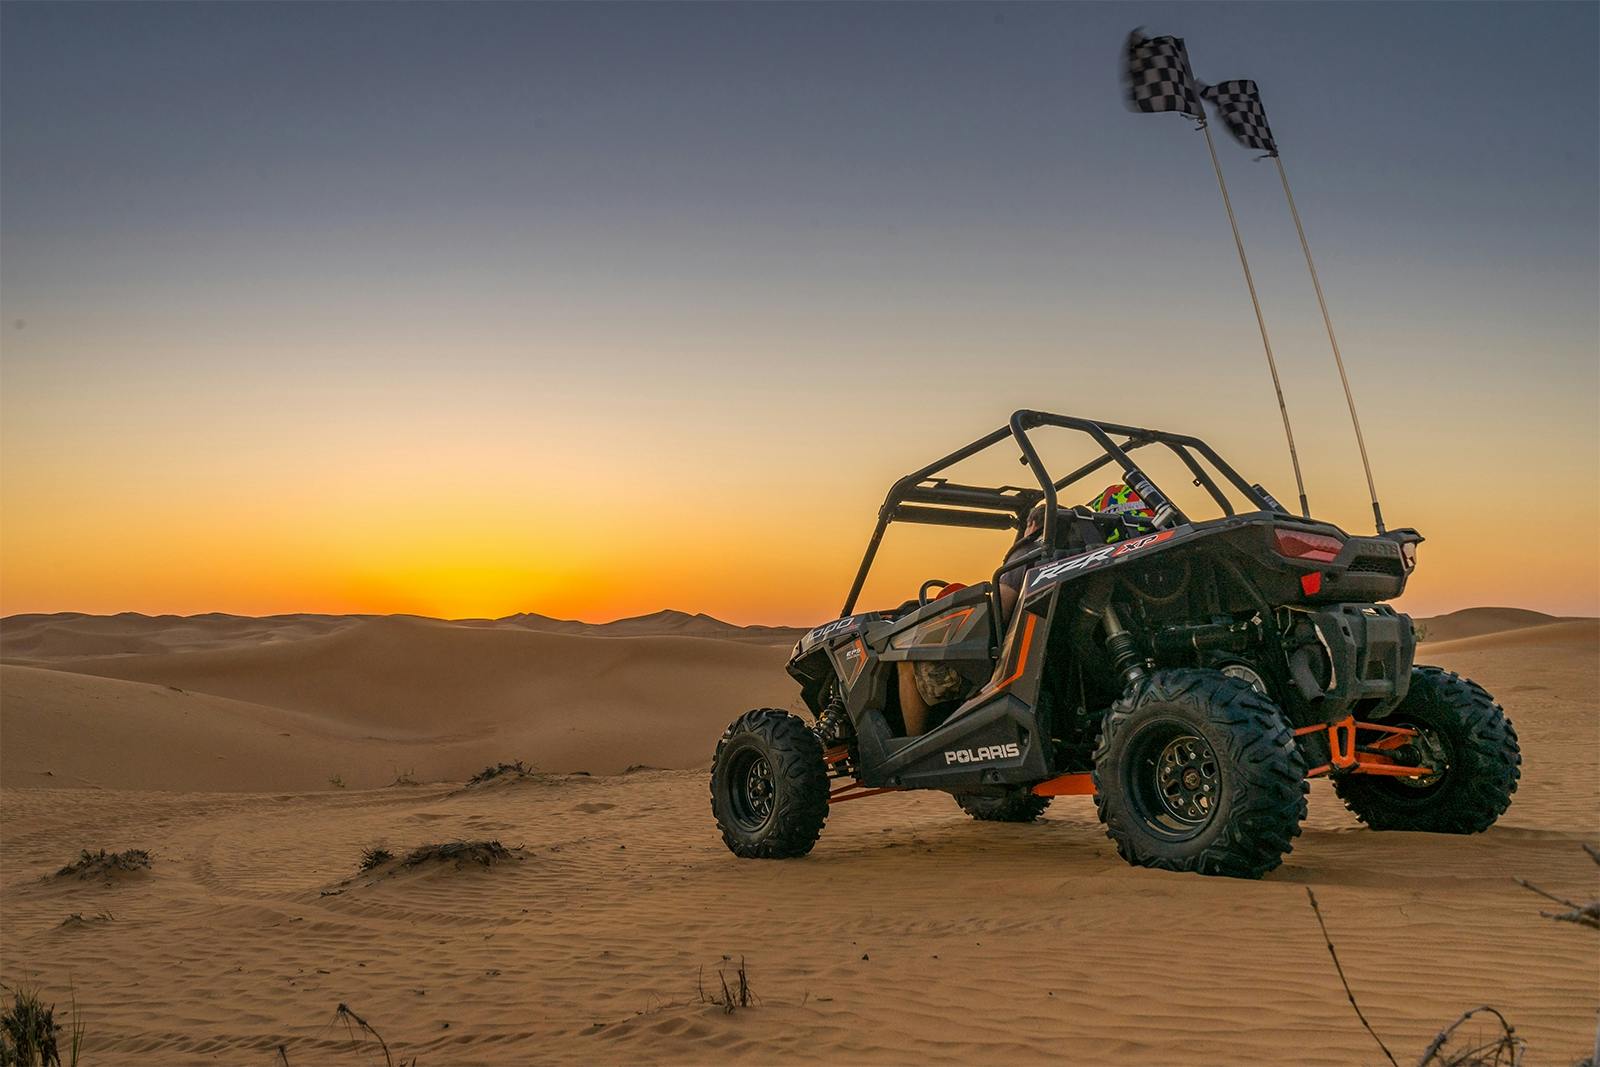 desert dune buggy